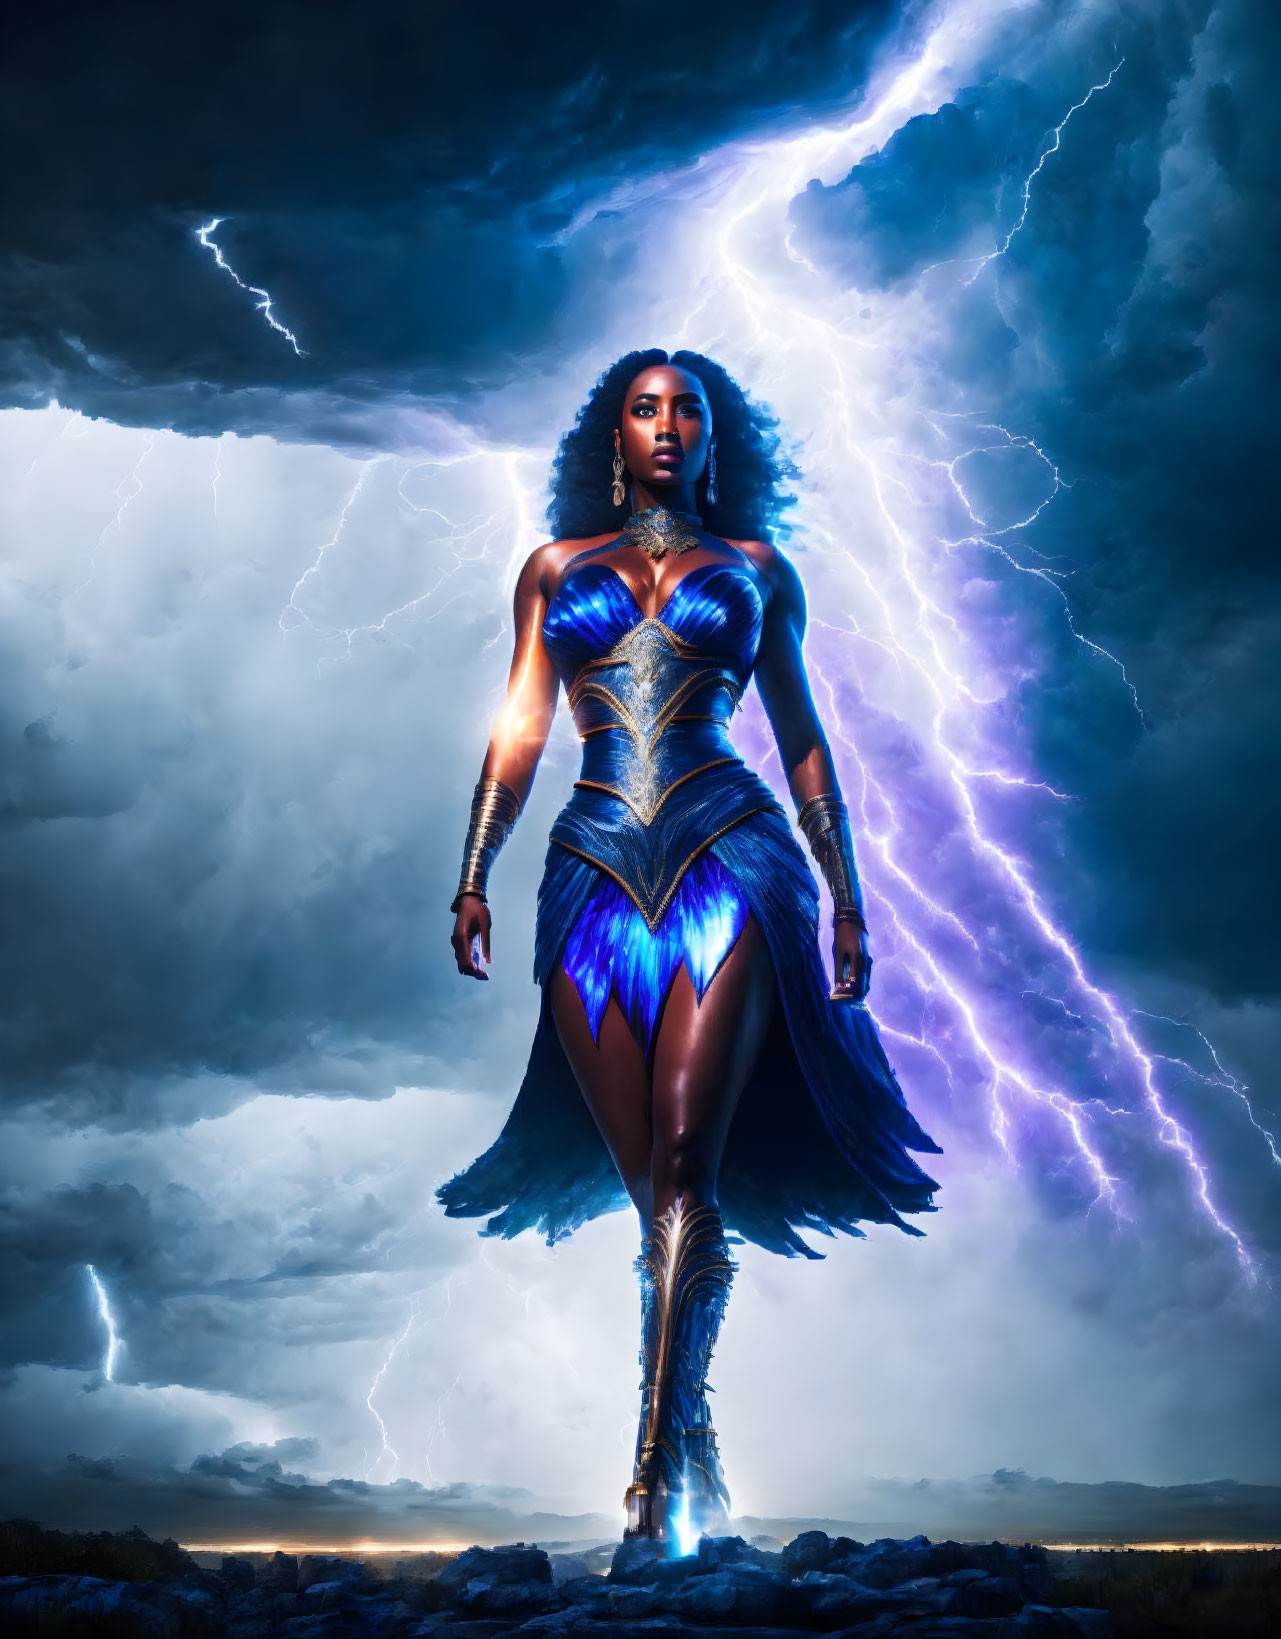 The Thunder Goddess